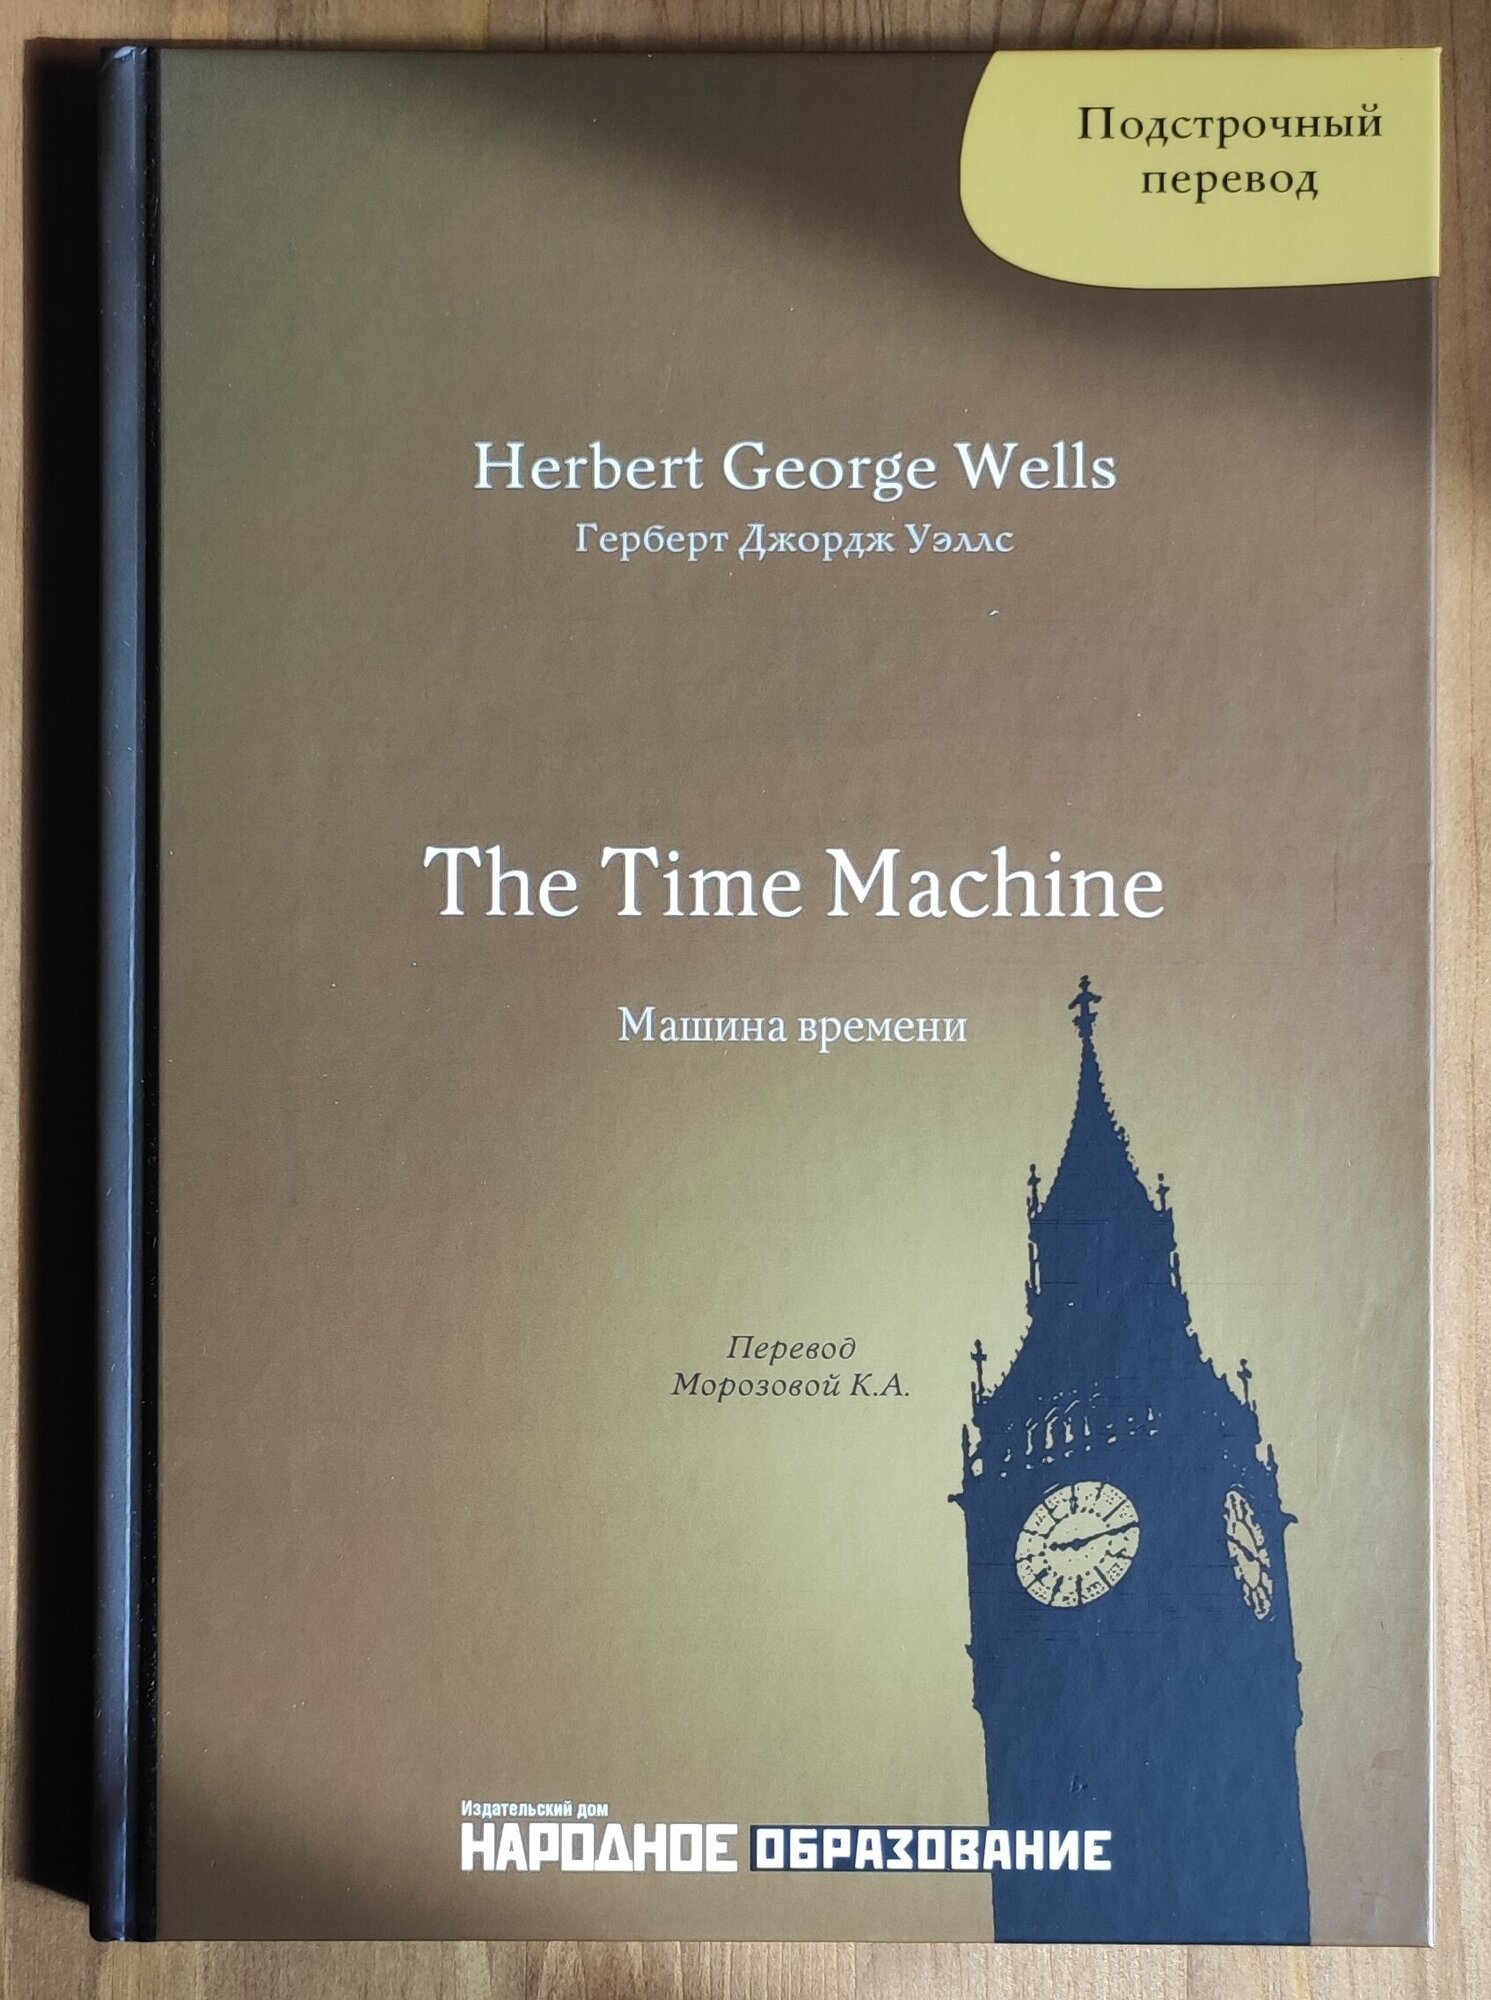 Герберт Д. Уэллс. Машина времени. Подстрочный перевод с английского языка на русский. H. G. Wells. The Time Machine.